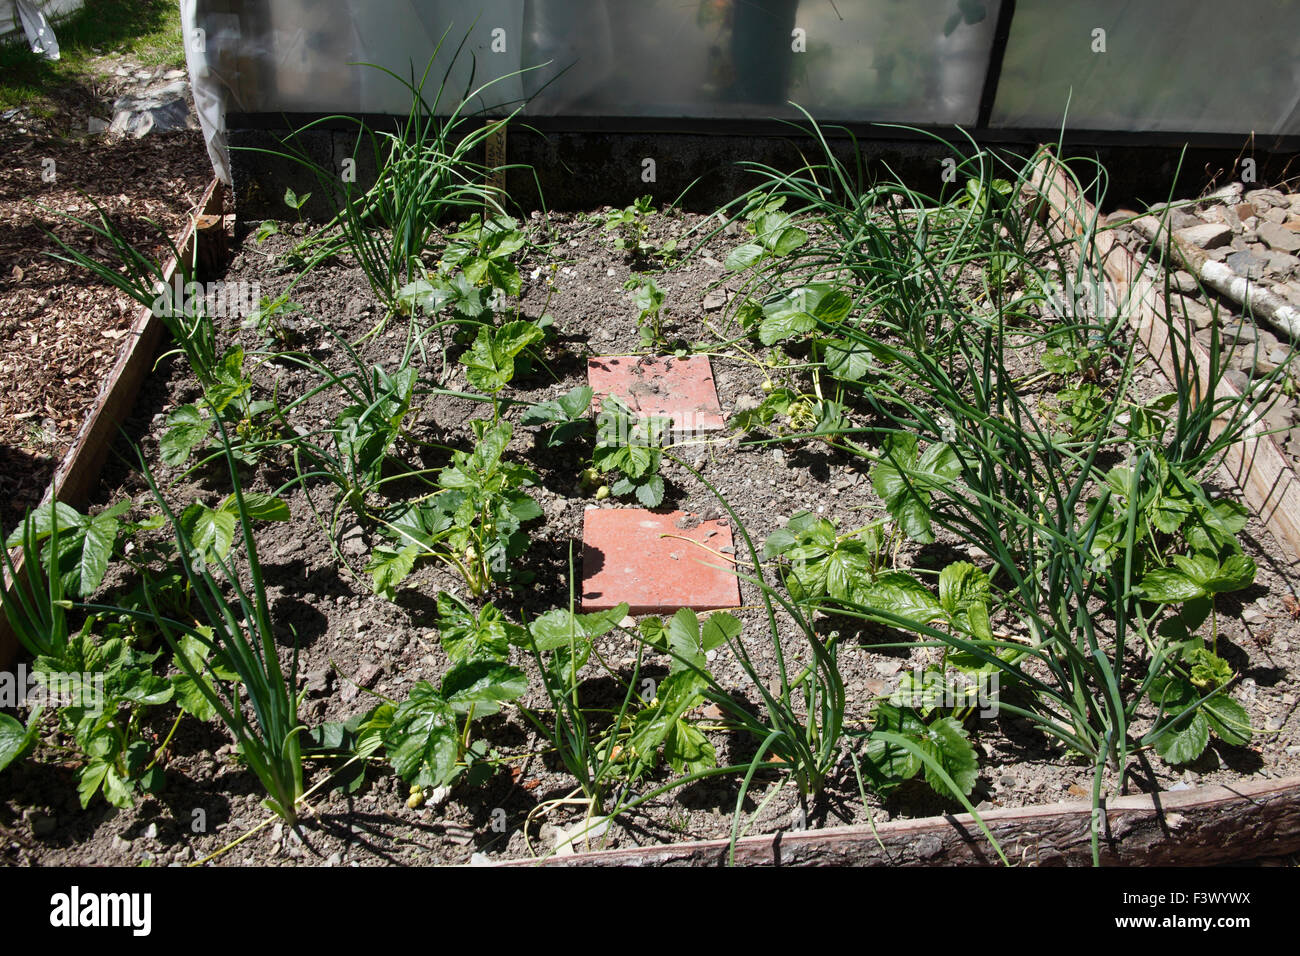 Fragaria Ananassa "Albion remontierenden" Erdbeeren 1. Jahr Pflanzen interplanted mit Schalotten Stockfoto